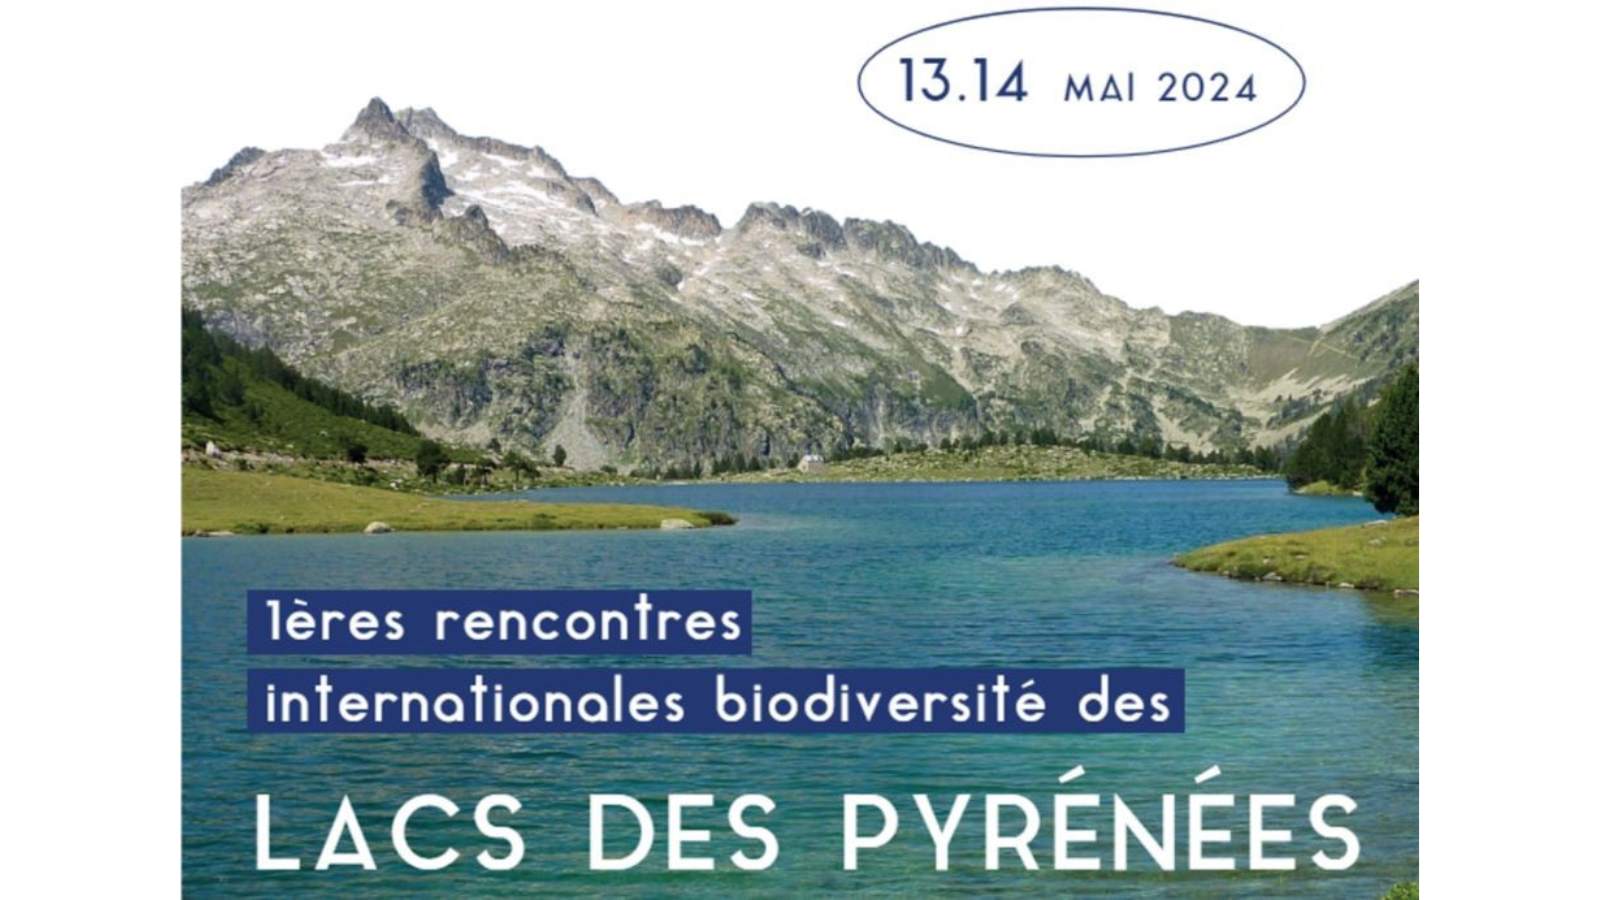 Primera reunió internacional sobre la biodiversitat dels estanys pirinencs